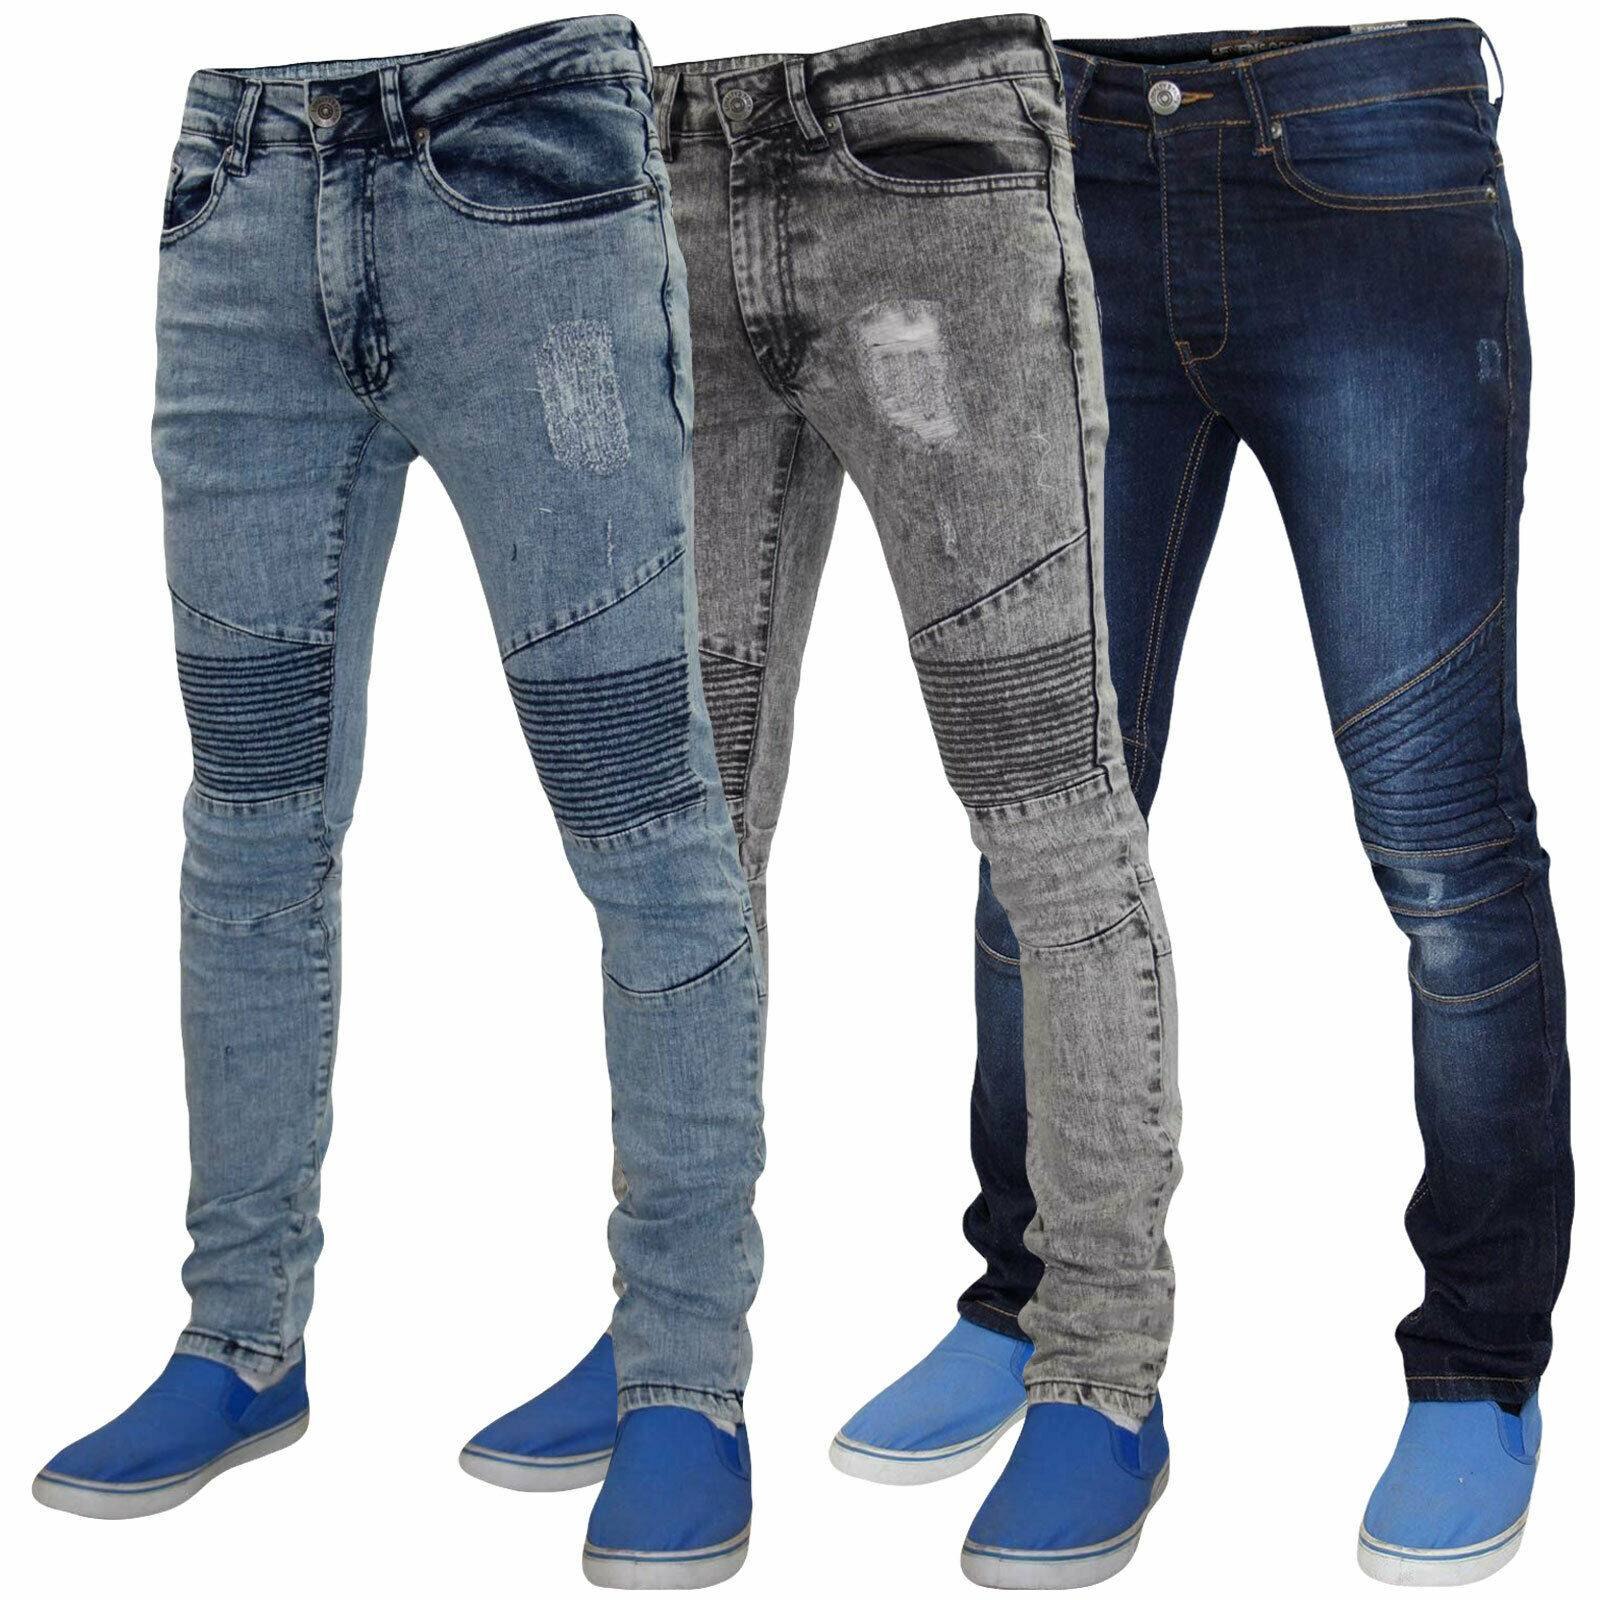 Недорогие мужские джинсы магазин. Siviglia Denim s70243 джинсы мужские. Bingoss Denim джинсы мужские. Мужские джинсы Denim Cotton Fit. Джинсы коттон мужские зауженные.